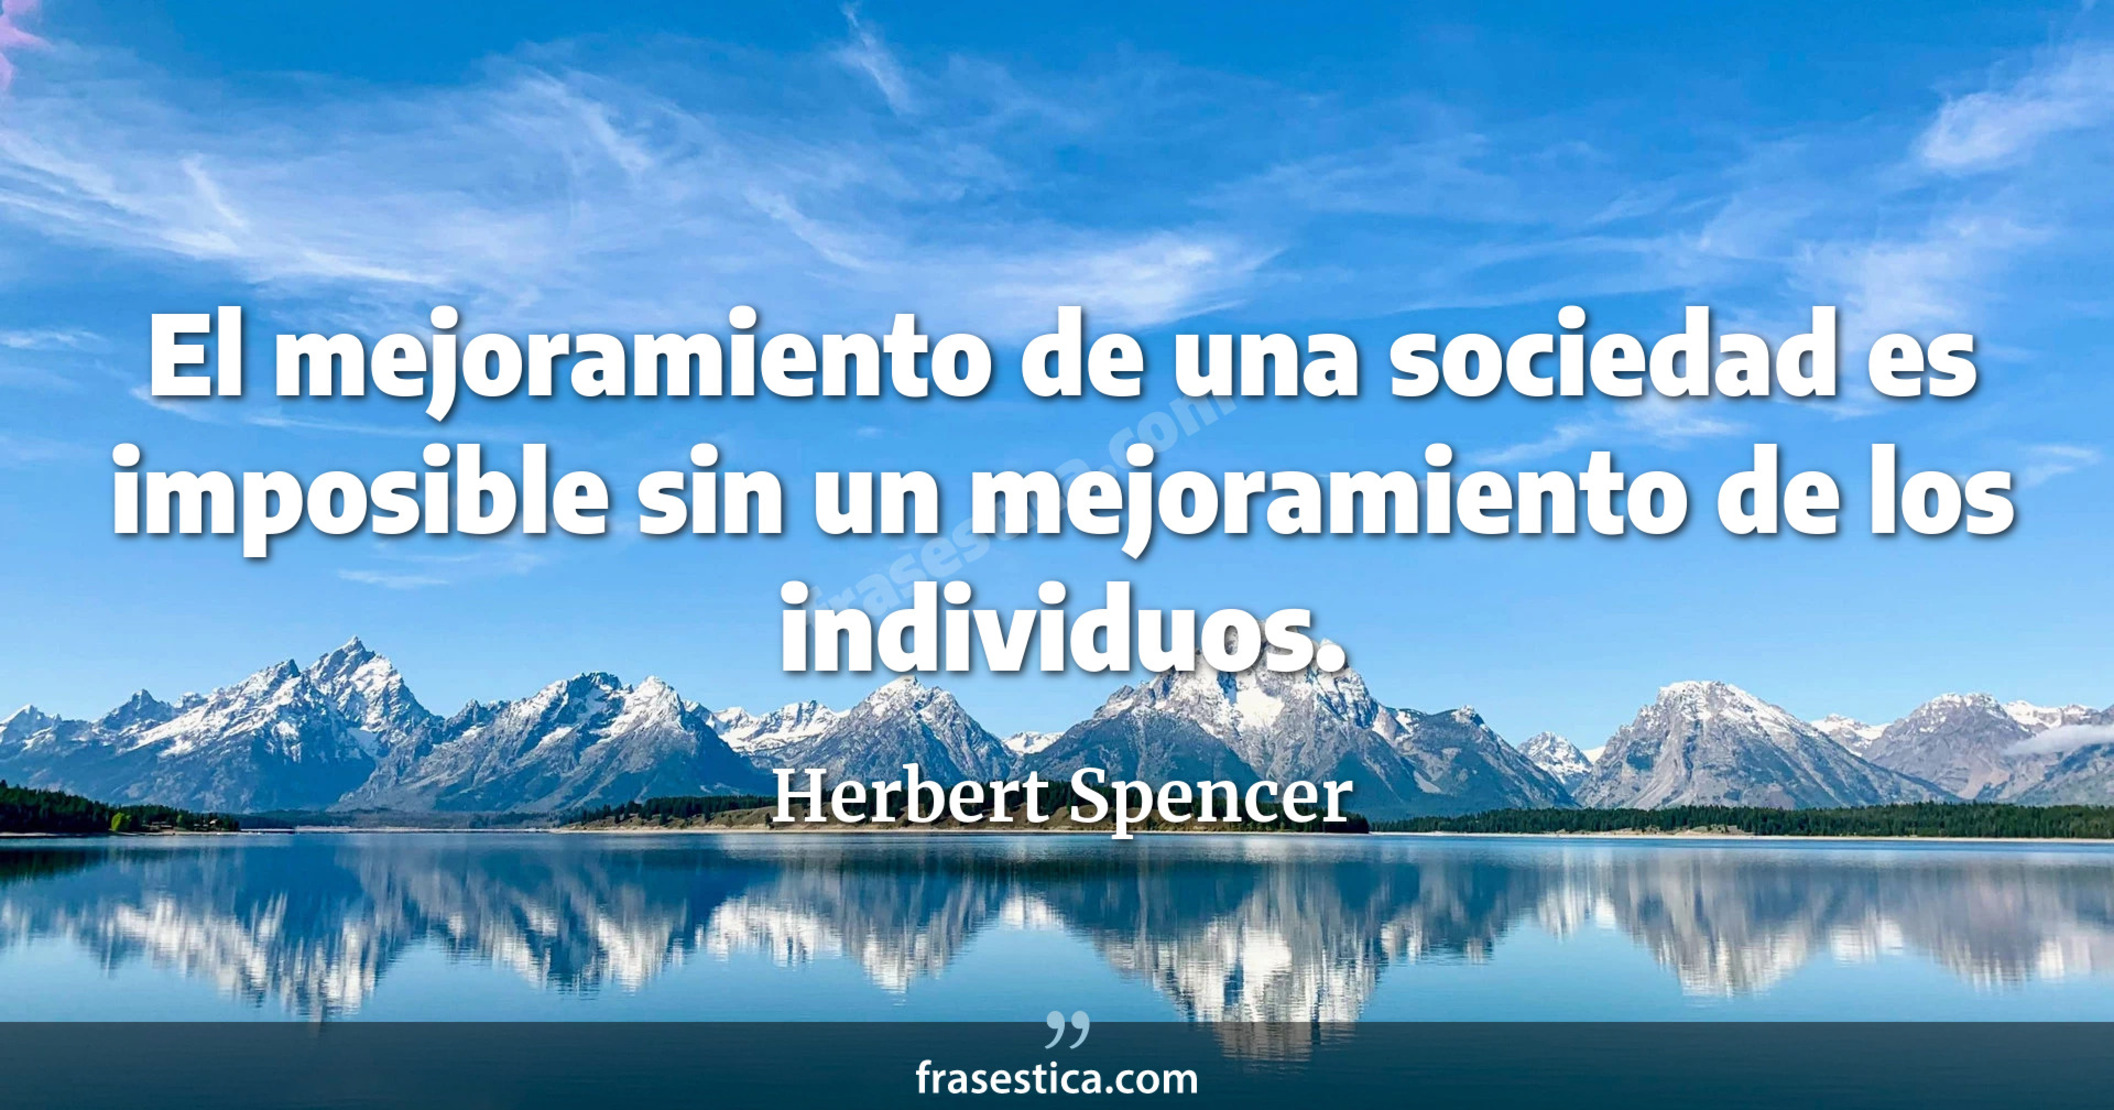 El mejoramiento de una sociedad es imposible sin un mejoramiento de los individuos. - Herbert Spencer